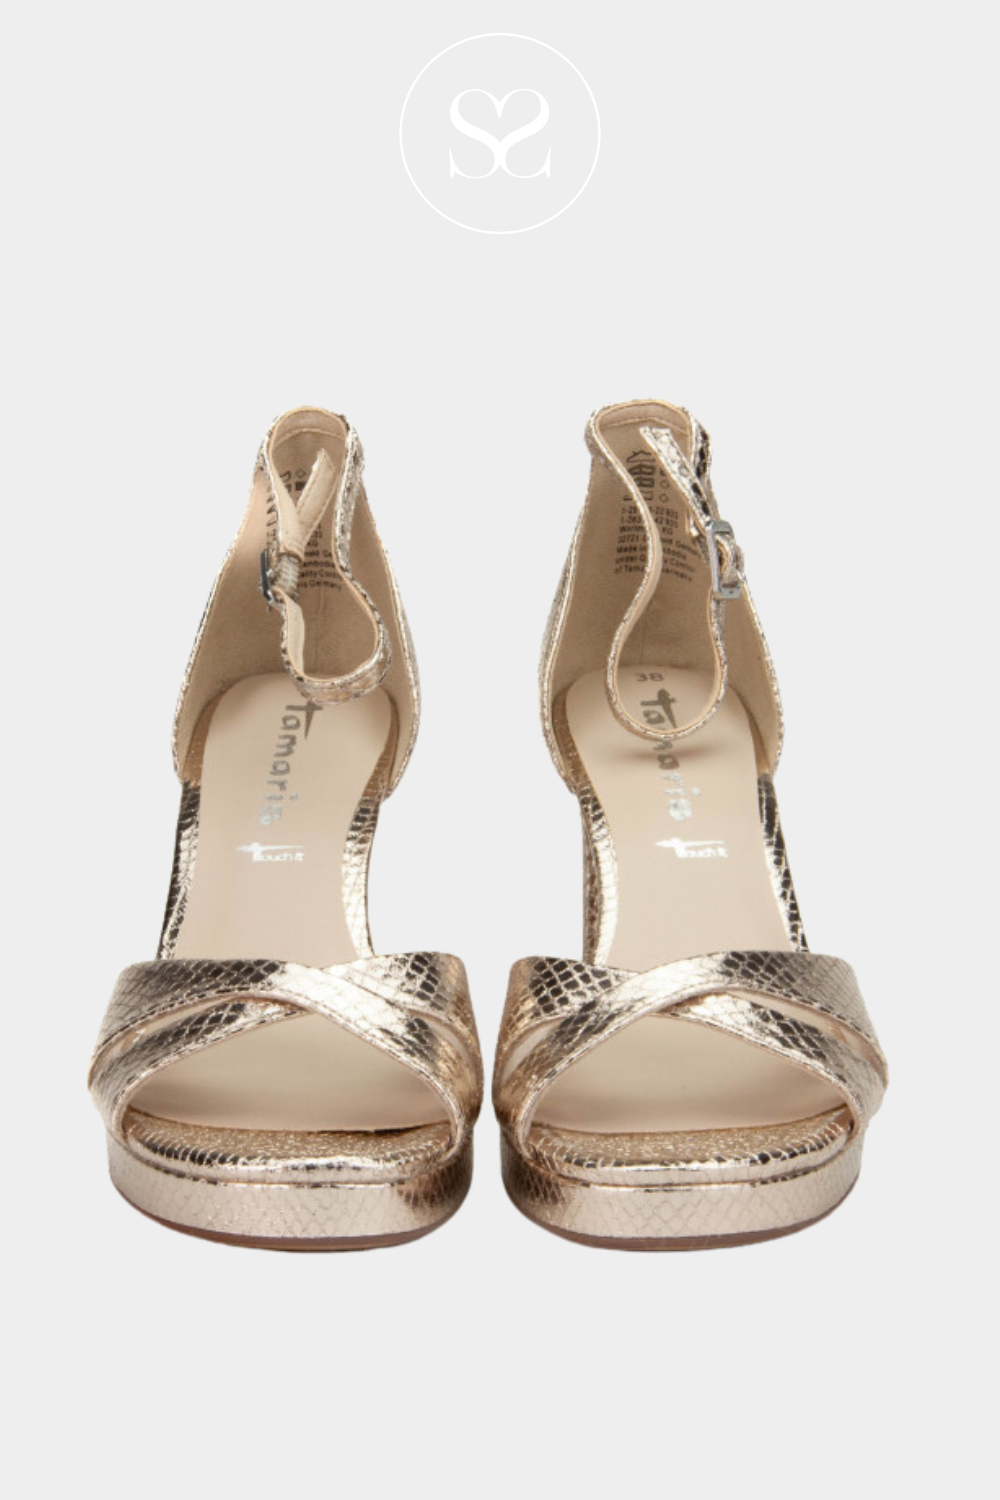 gold high heel sandals from Tamaris